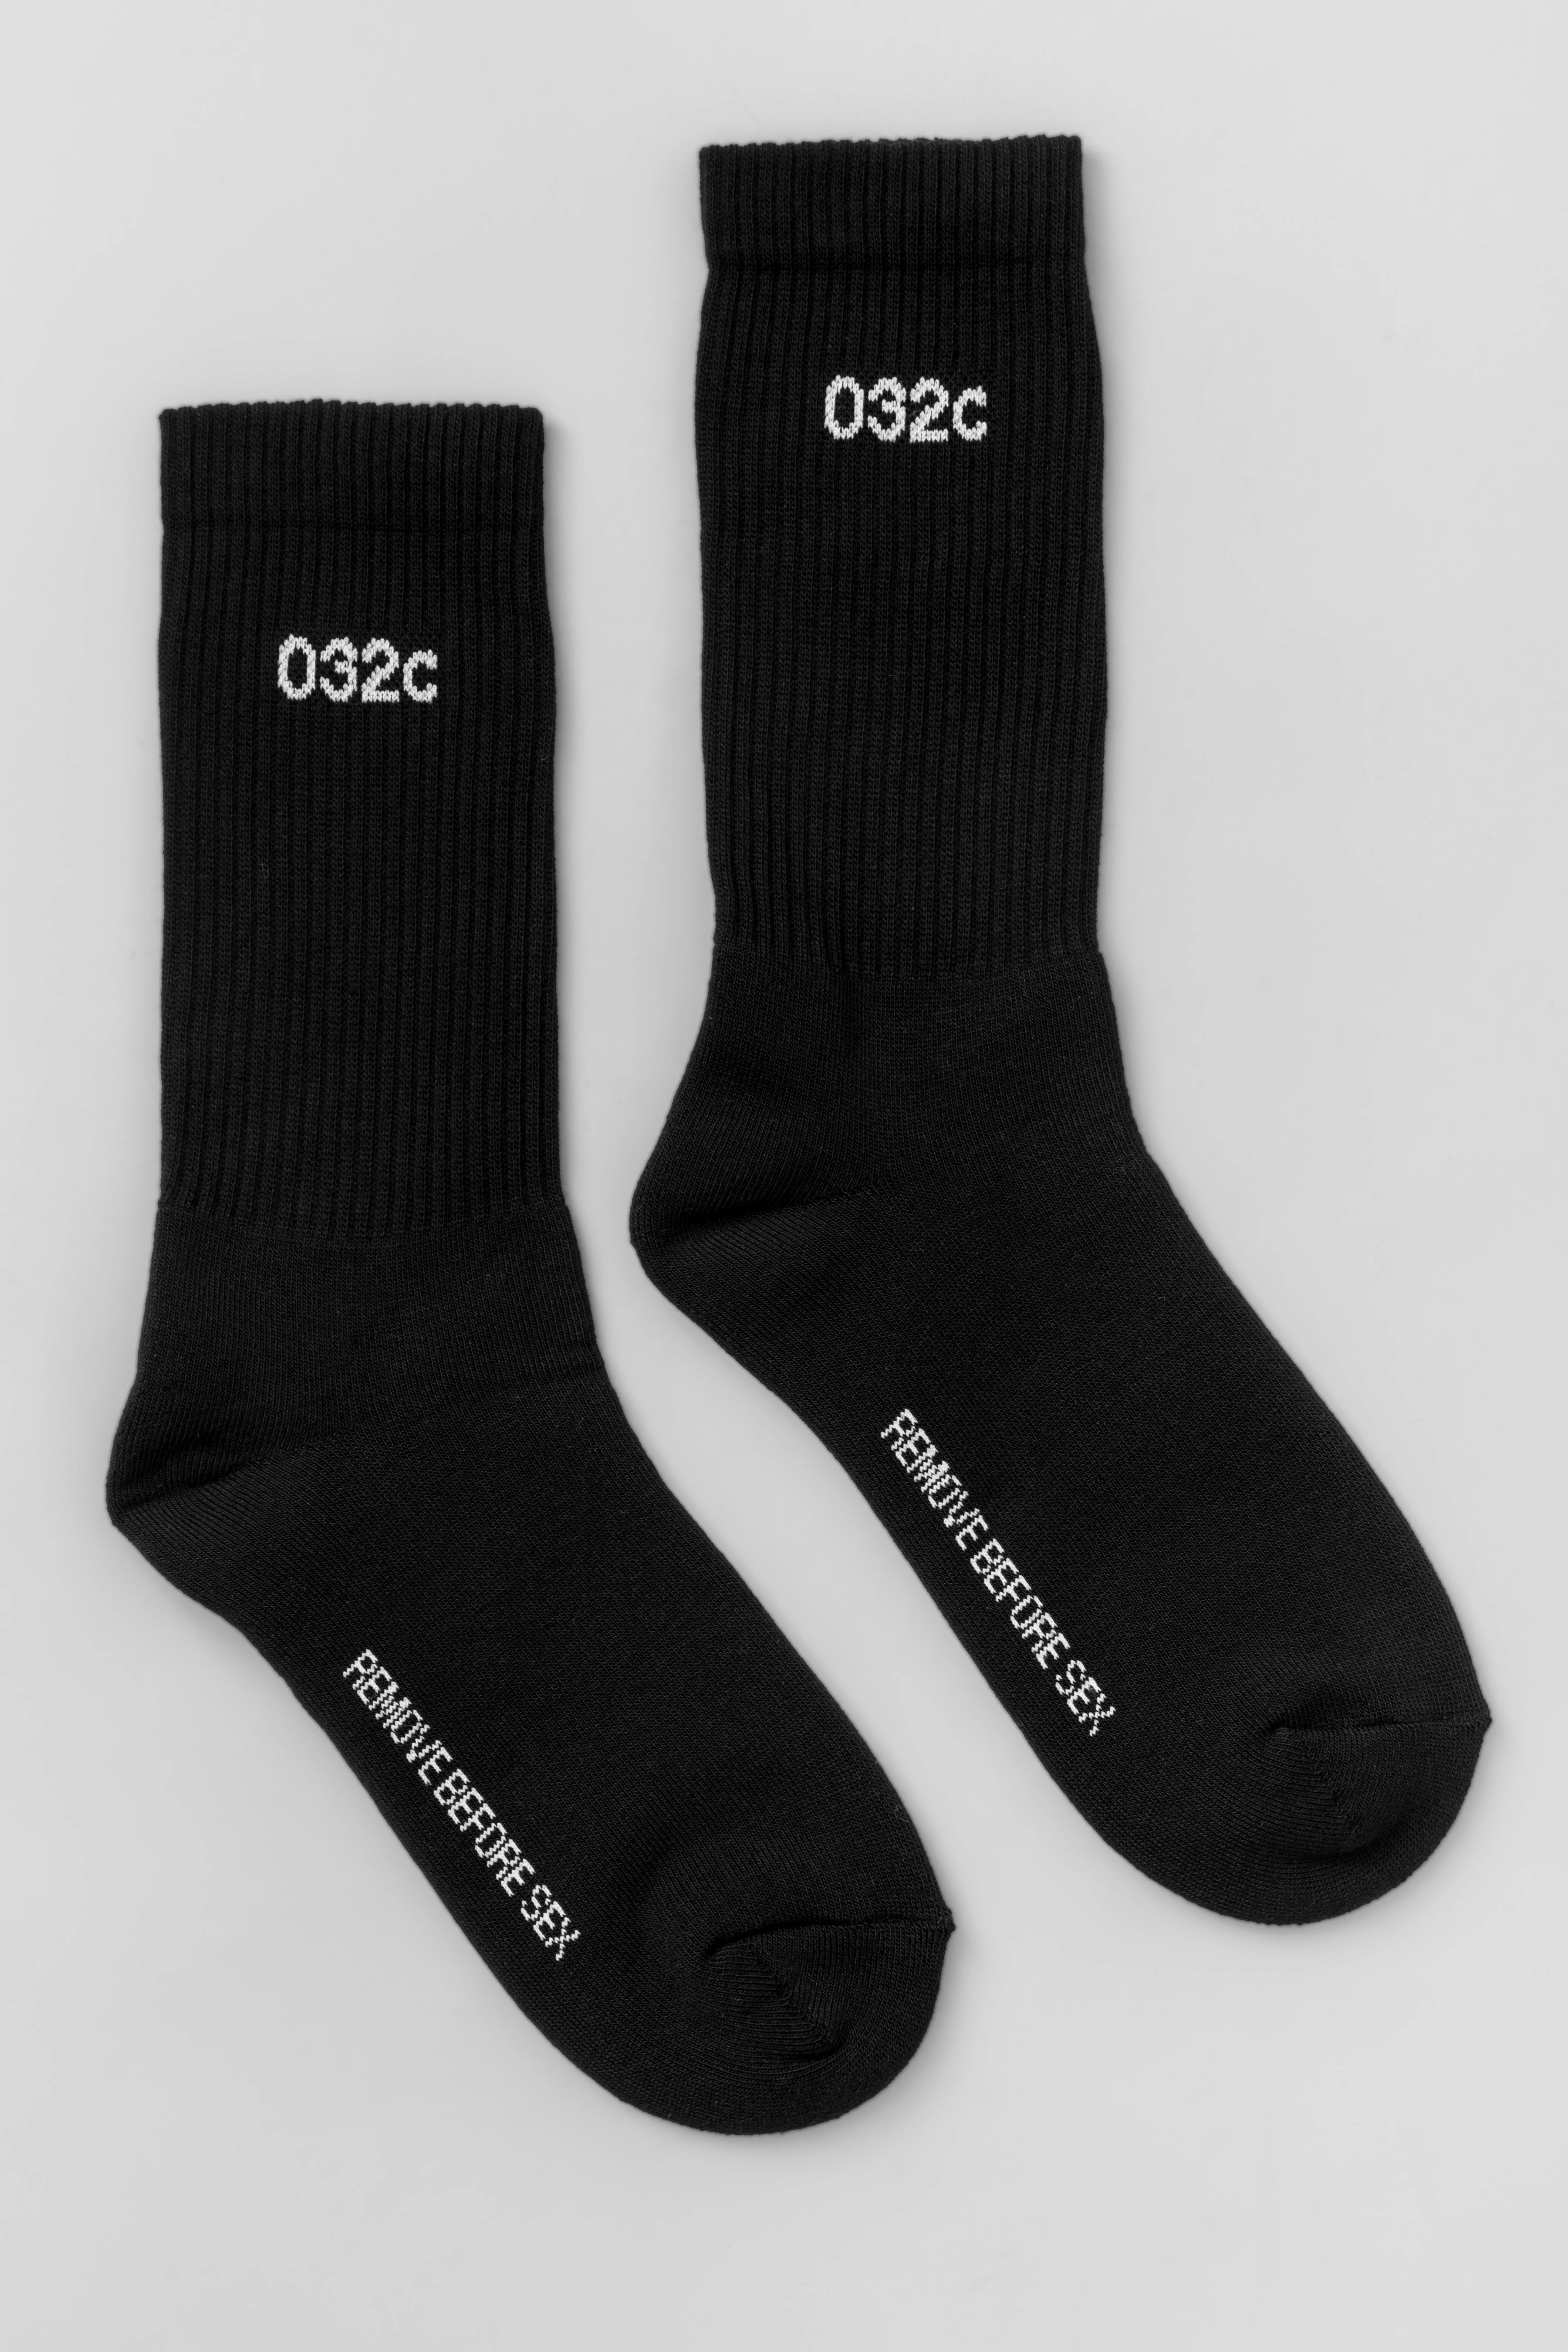 REMOVE BEFORE SEX Socks Black/White - 032c2306acc-184_df5fcb31-8615-4ecd-b4d9-8b09ffb7ff48